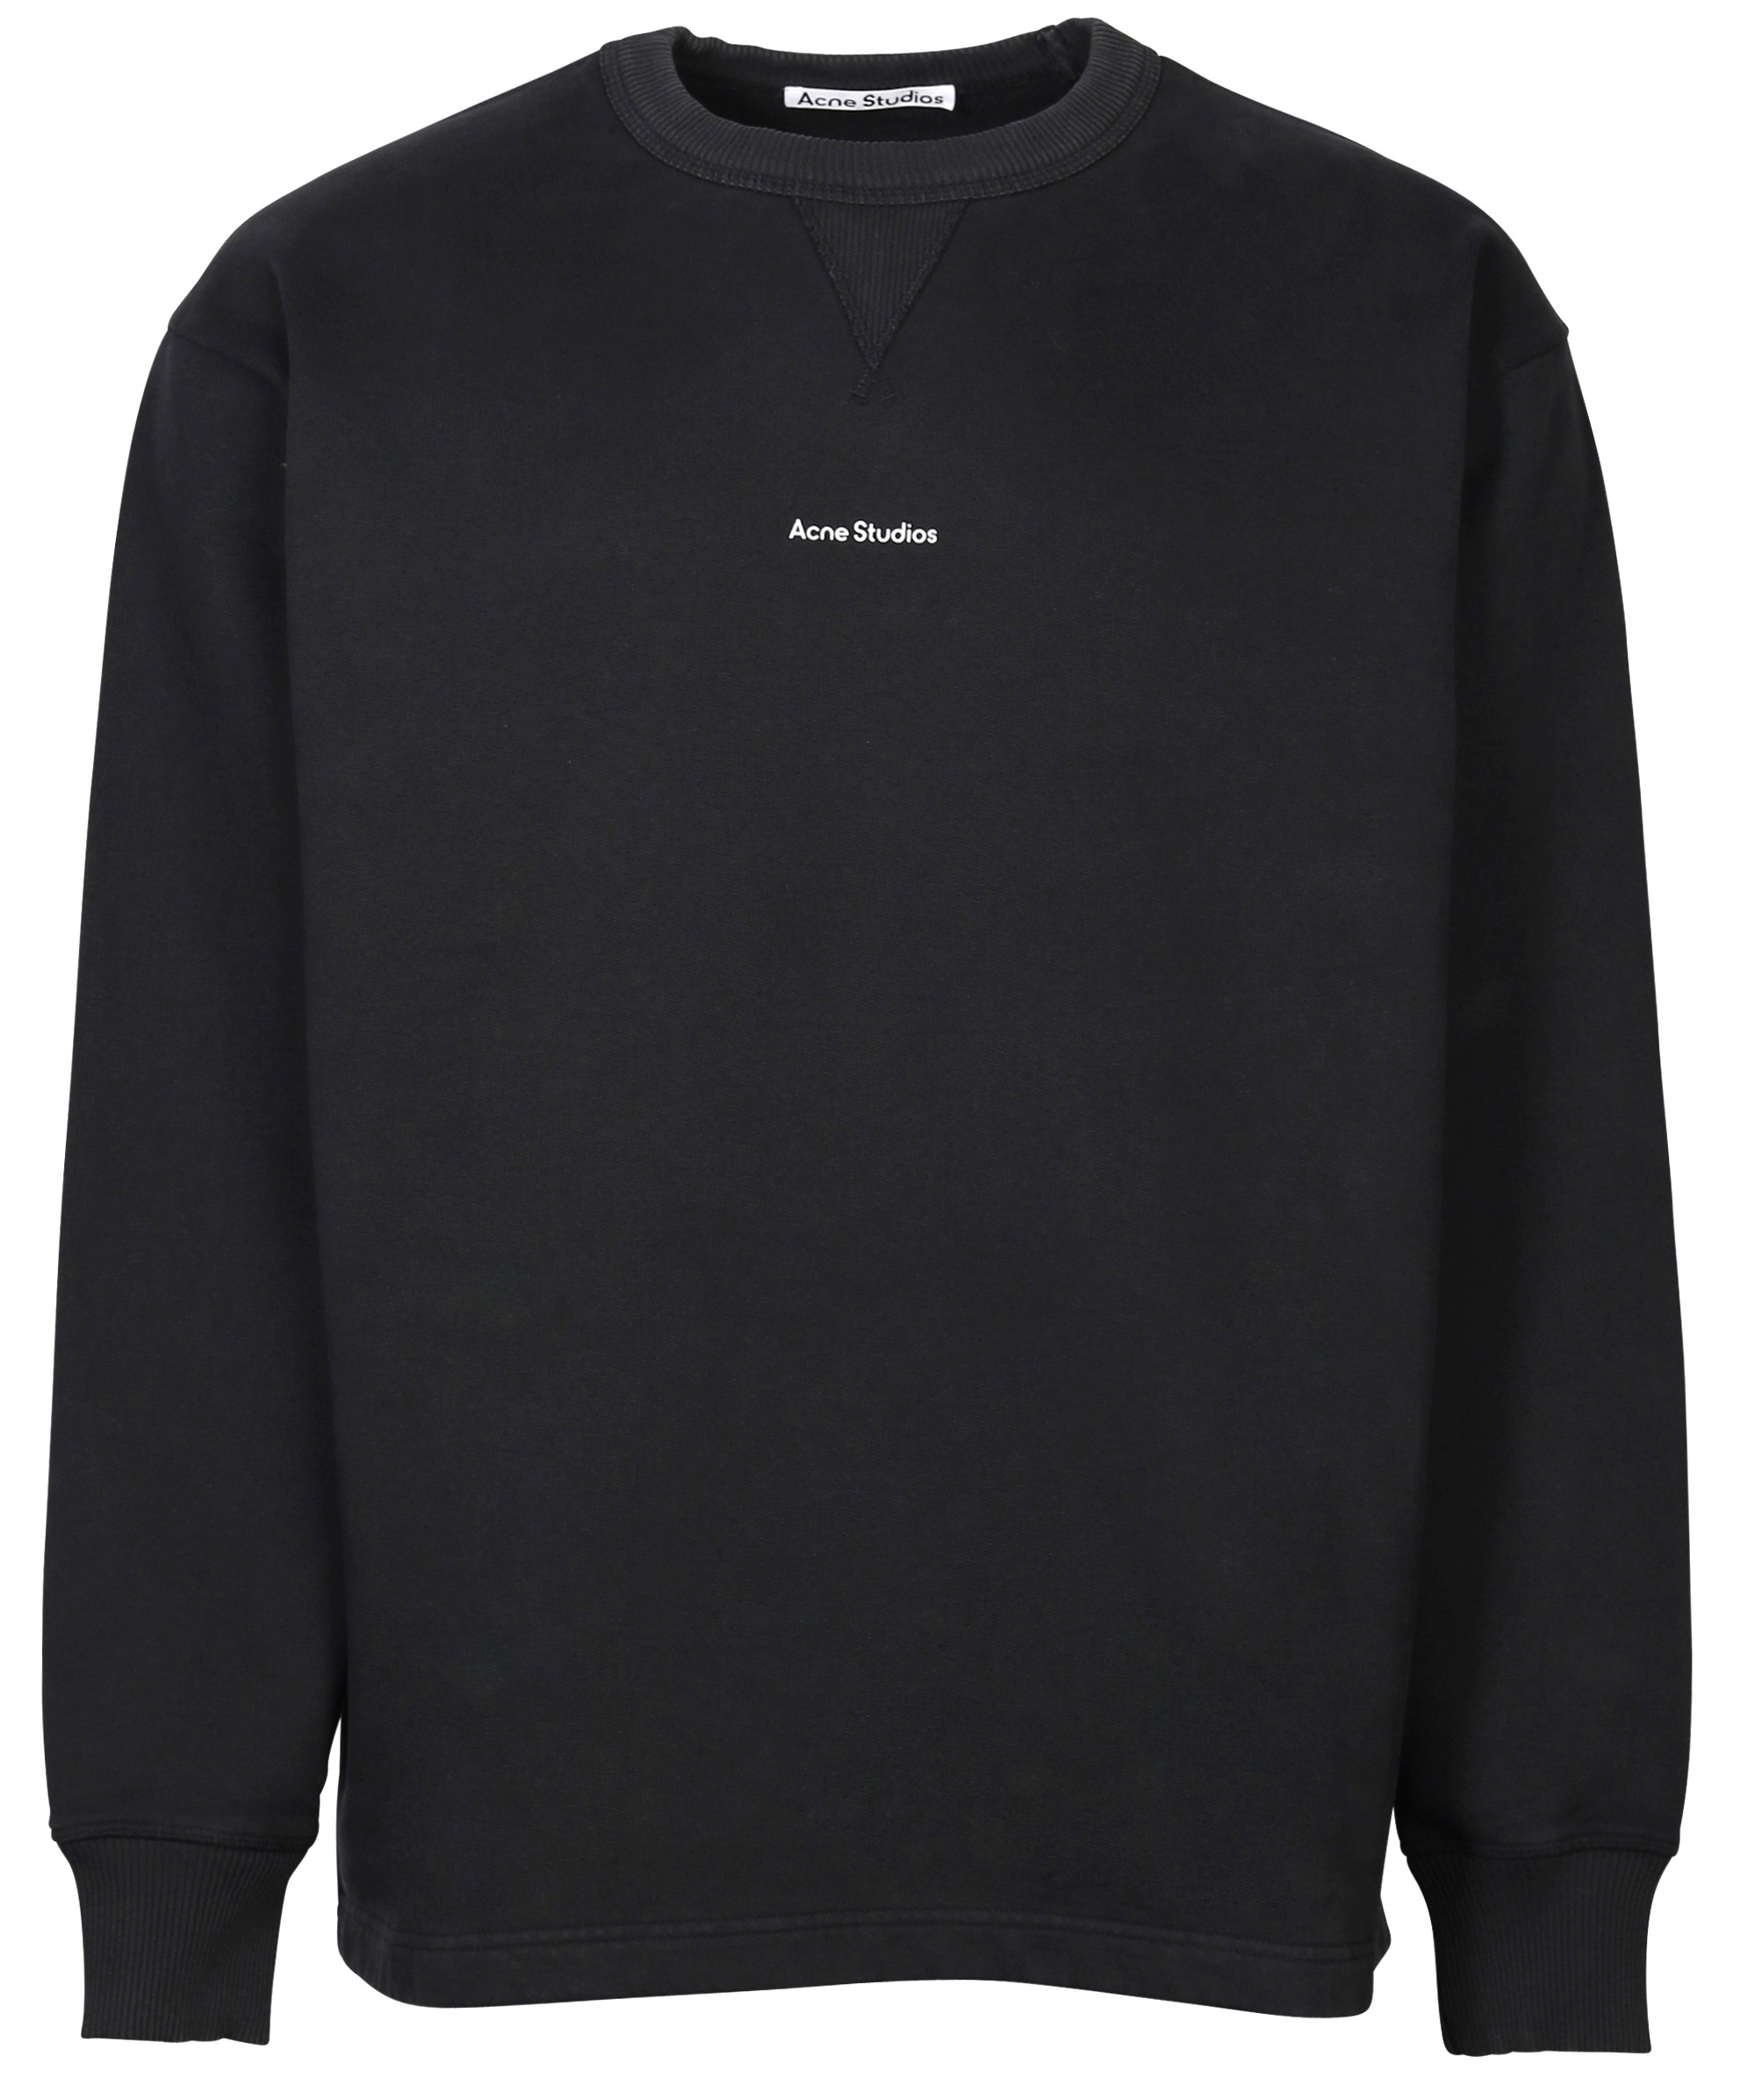 ACNE STUDIOS Stamp Oversize Sweatshirt in Black